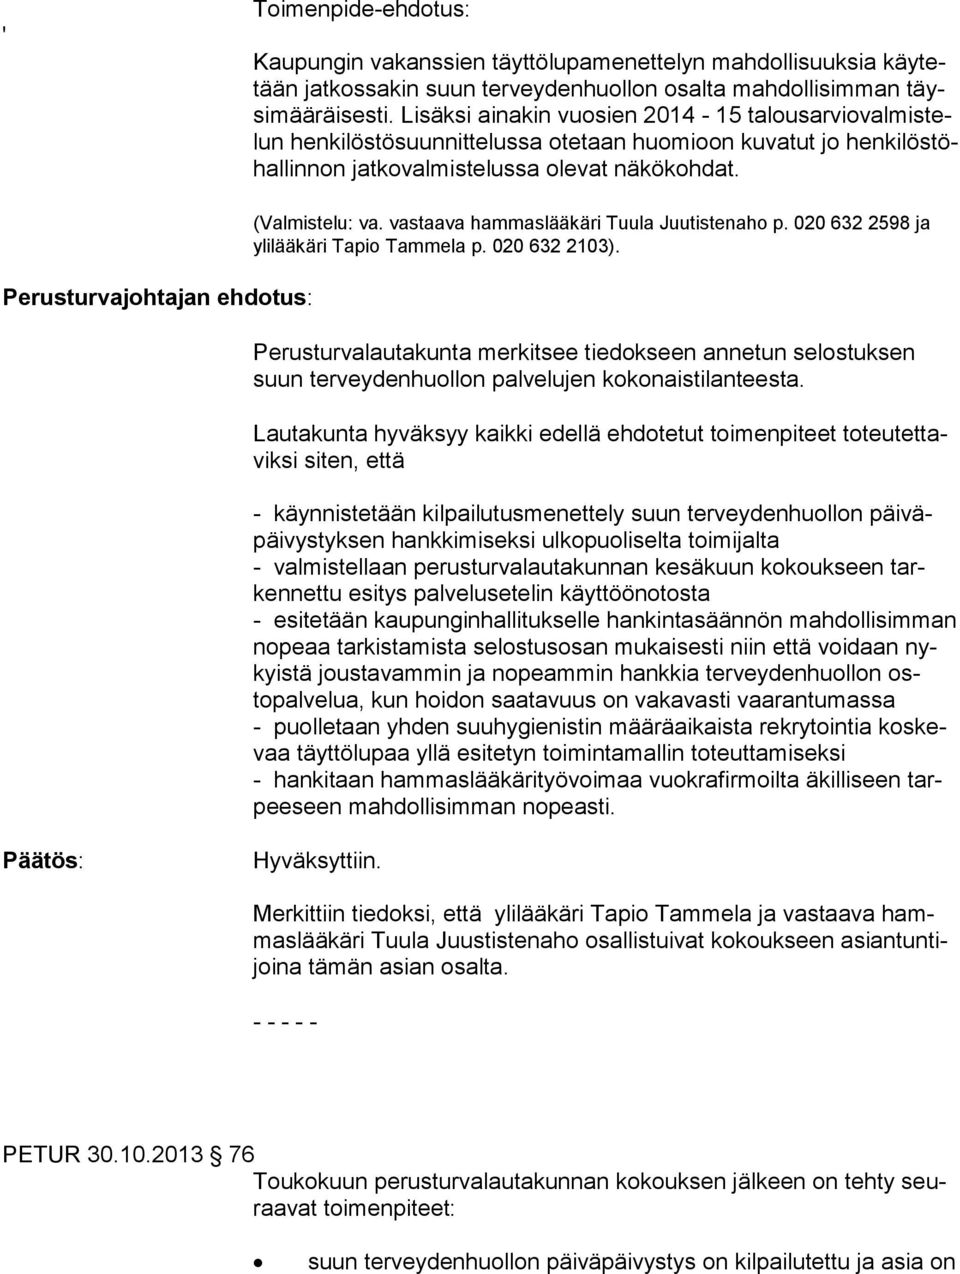 Perusturvajohtajan ehdotus: (Valmistelu: va. vastaava hammaslääkäri Tuula Juutistenaho p. 020 632 2598 ja ylilääkäri Tapio Tammela p. 020 632 2103).